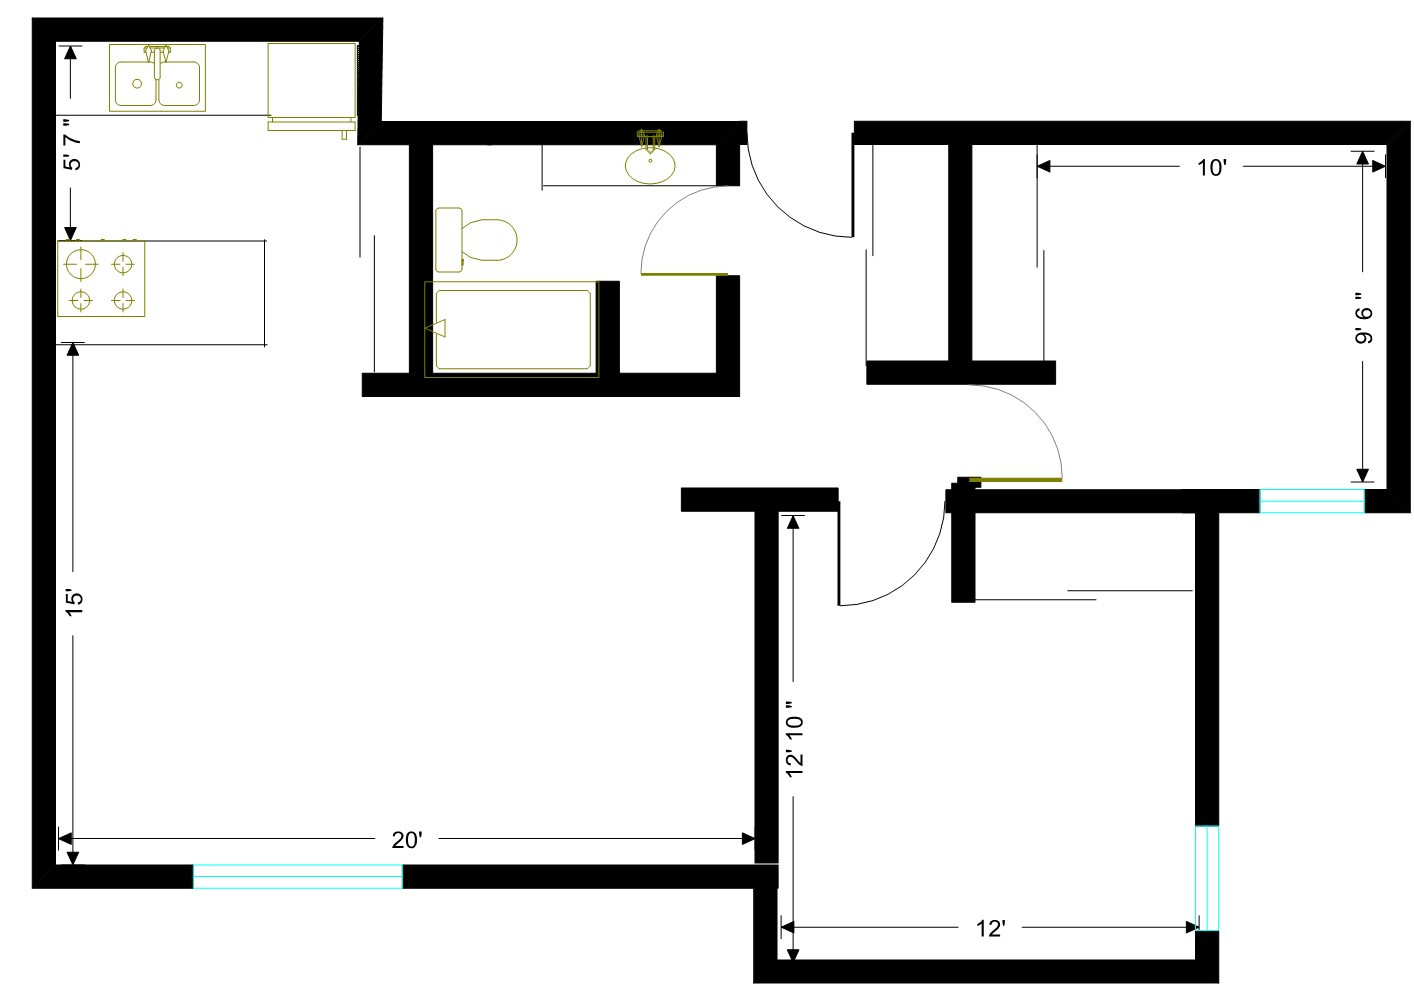 Kerkhoven-2-bedroom-layout